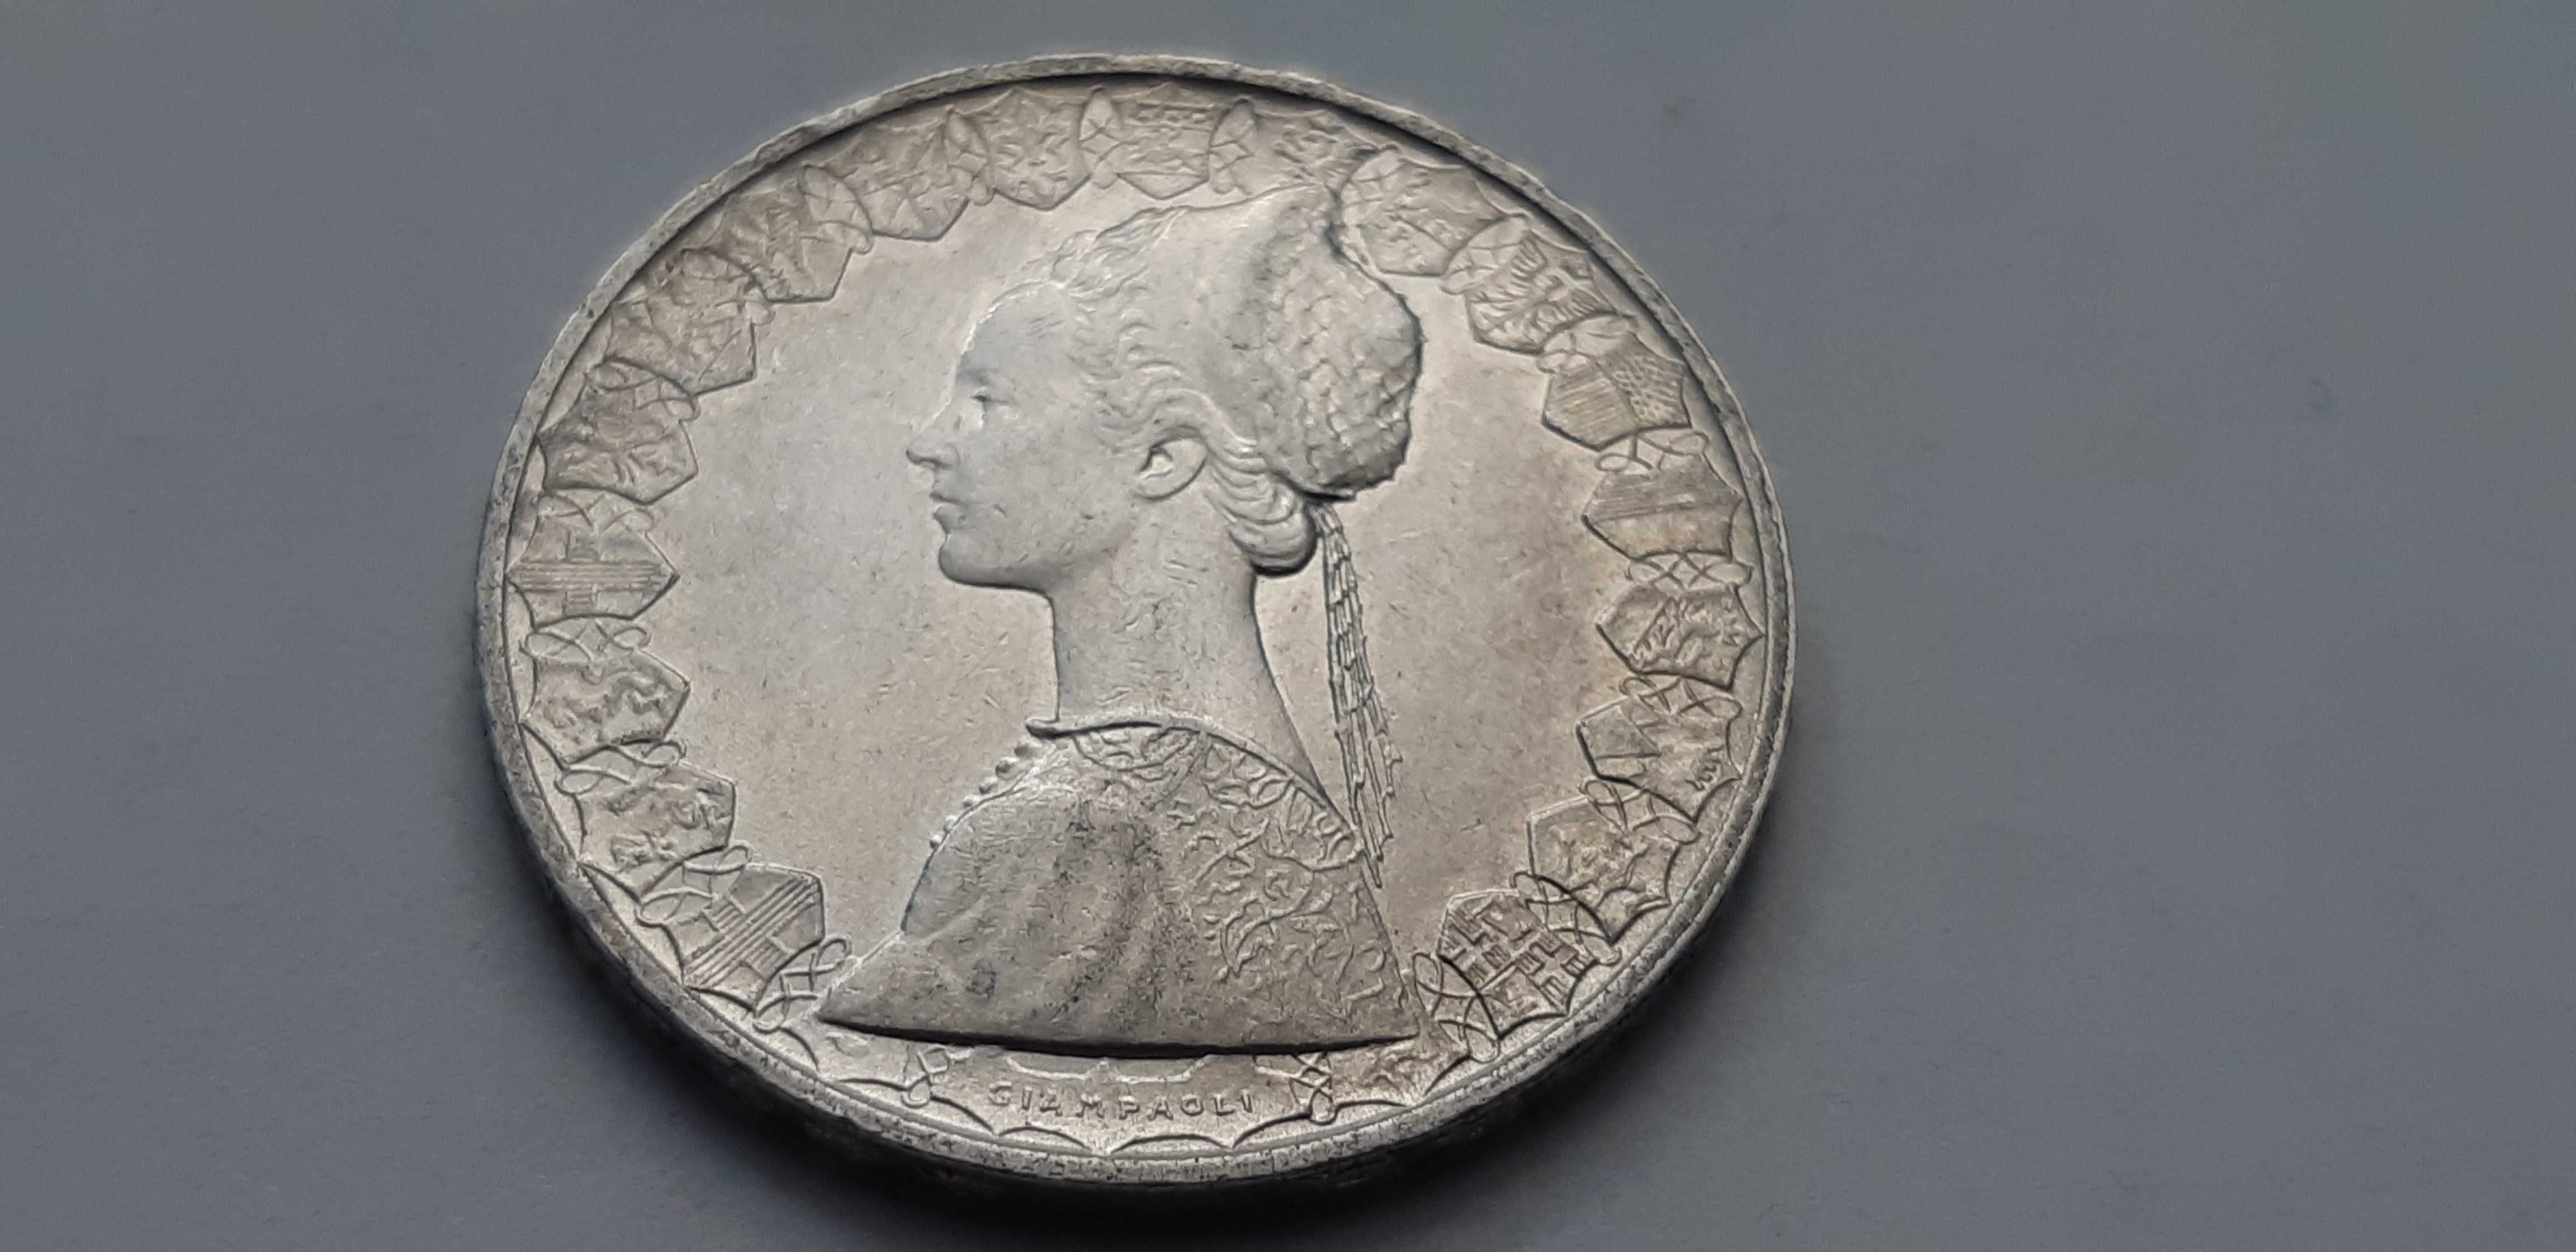 Włochy 500 lirów 1958 rok - srebro - real foto - okołomennicza